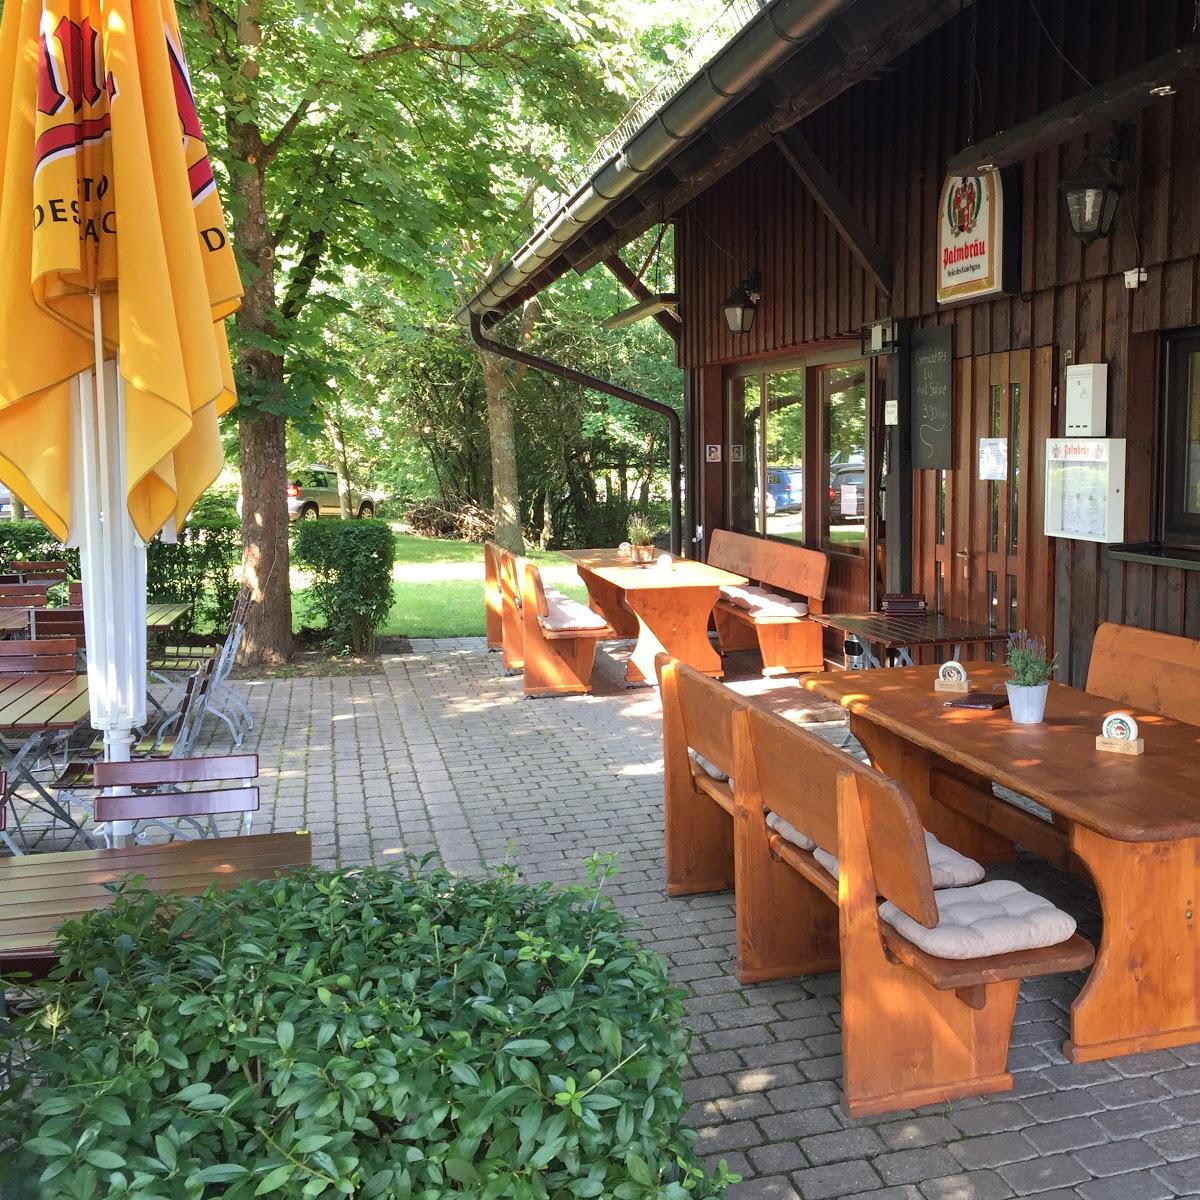 Restaurant "Zur Dreschhalle" in  Sternenfels